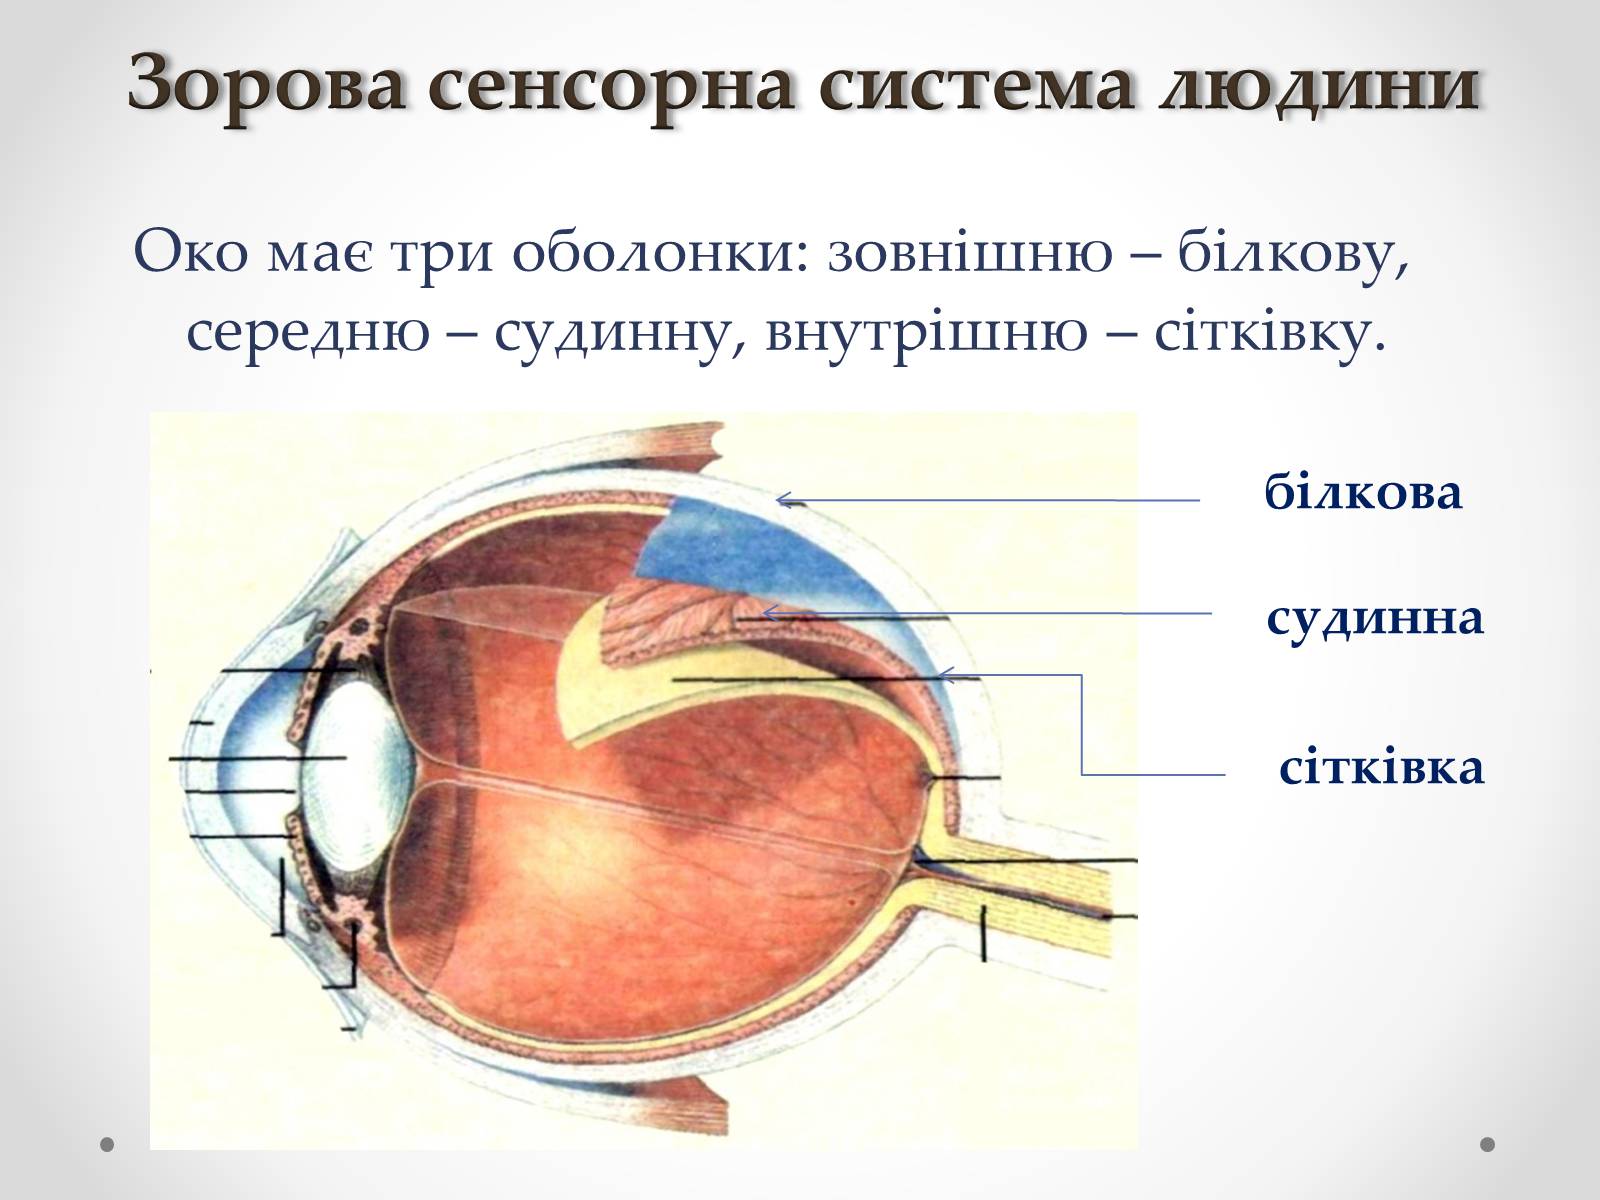 Как называется прозрачная часть белочной оболочки глаза. Белочная оболочка глазного яблока. Оболочки глазного яблока белочная сосудистая. Оболочки глаза белочная сосудистая сетчатка. Строение белочной оболочки глазного яблока.